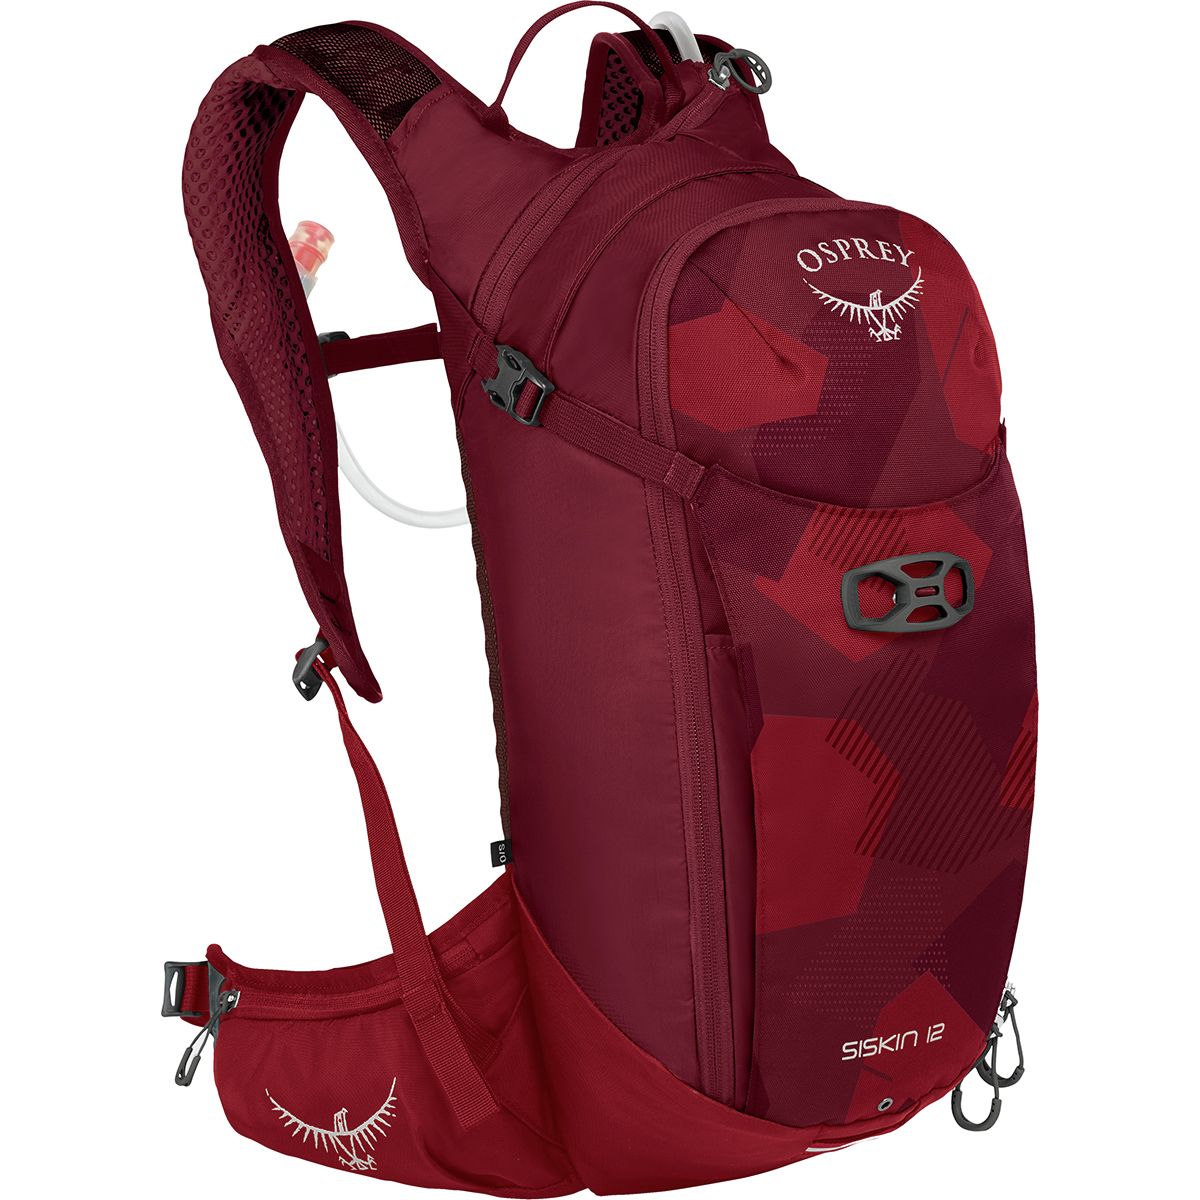 Osprey Packs Siskin 12L Backpack